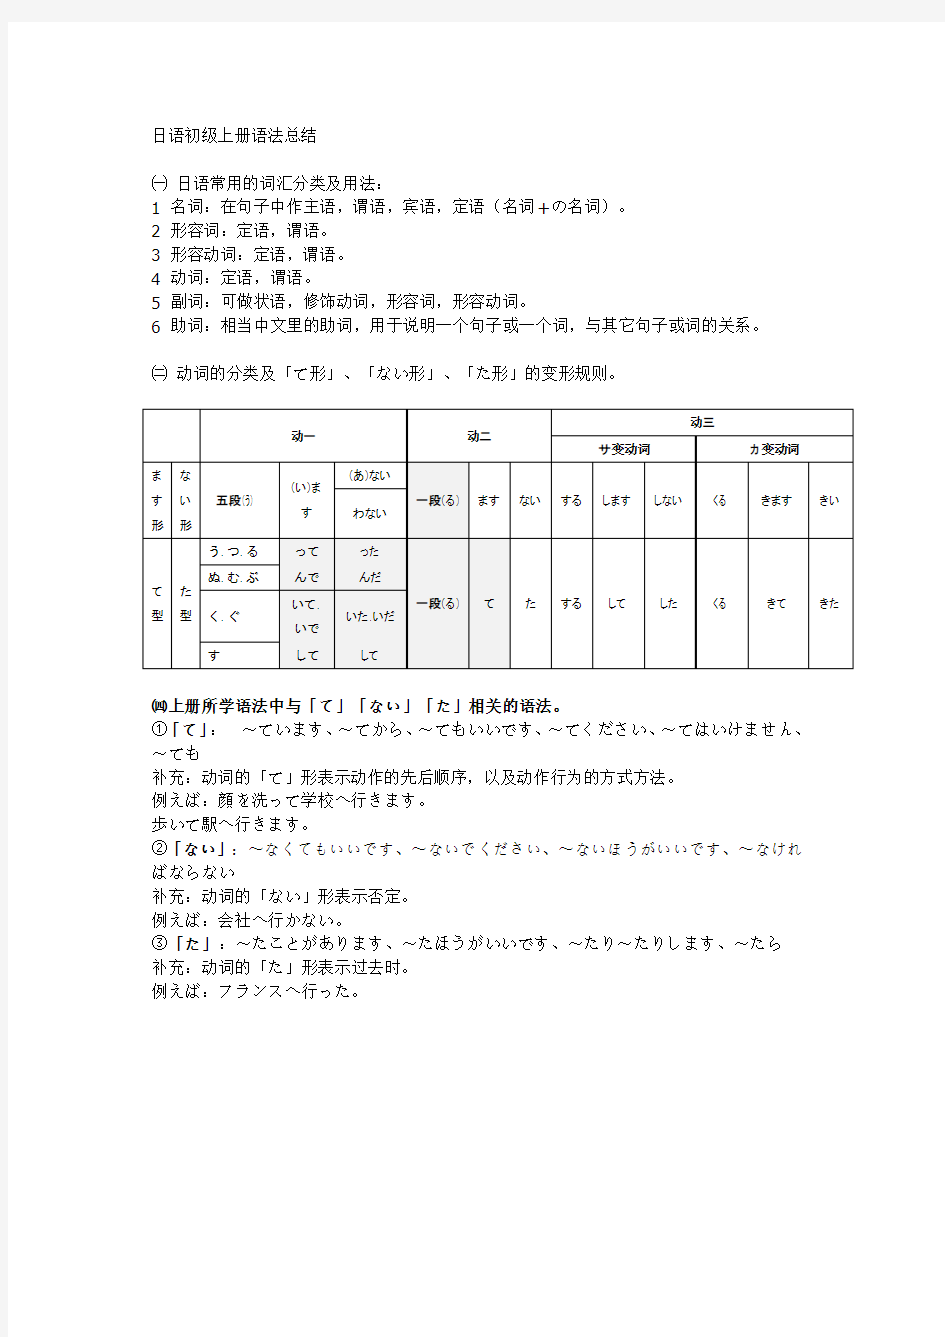 标准日本语初级上册语法总结(改：动词原形)